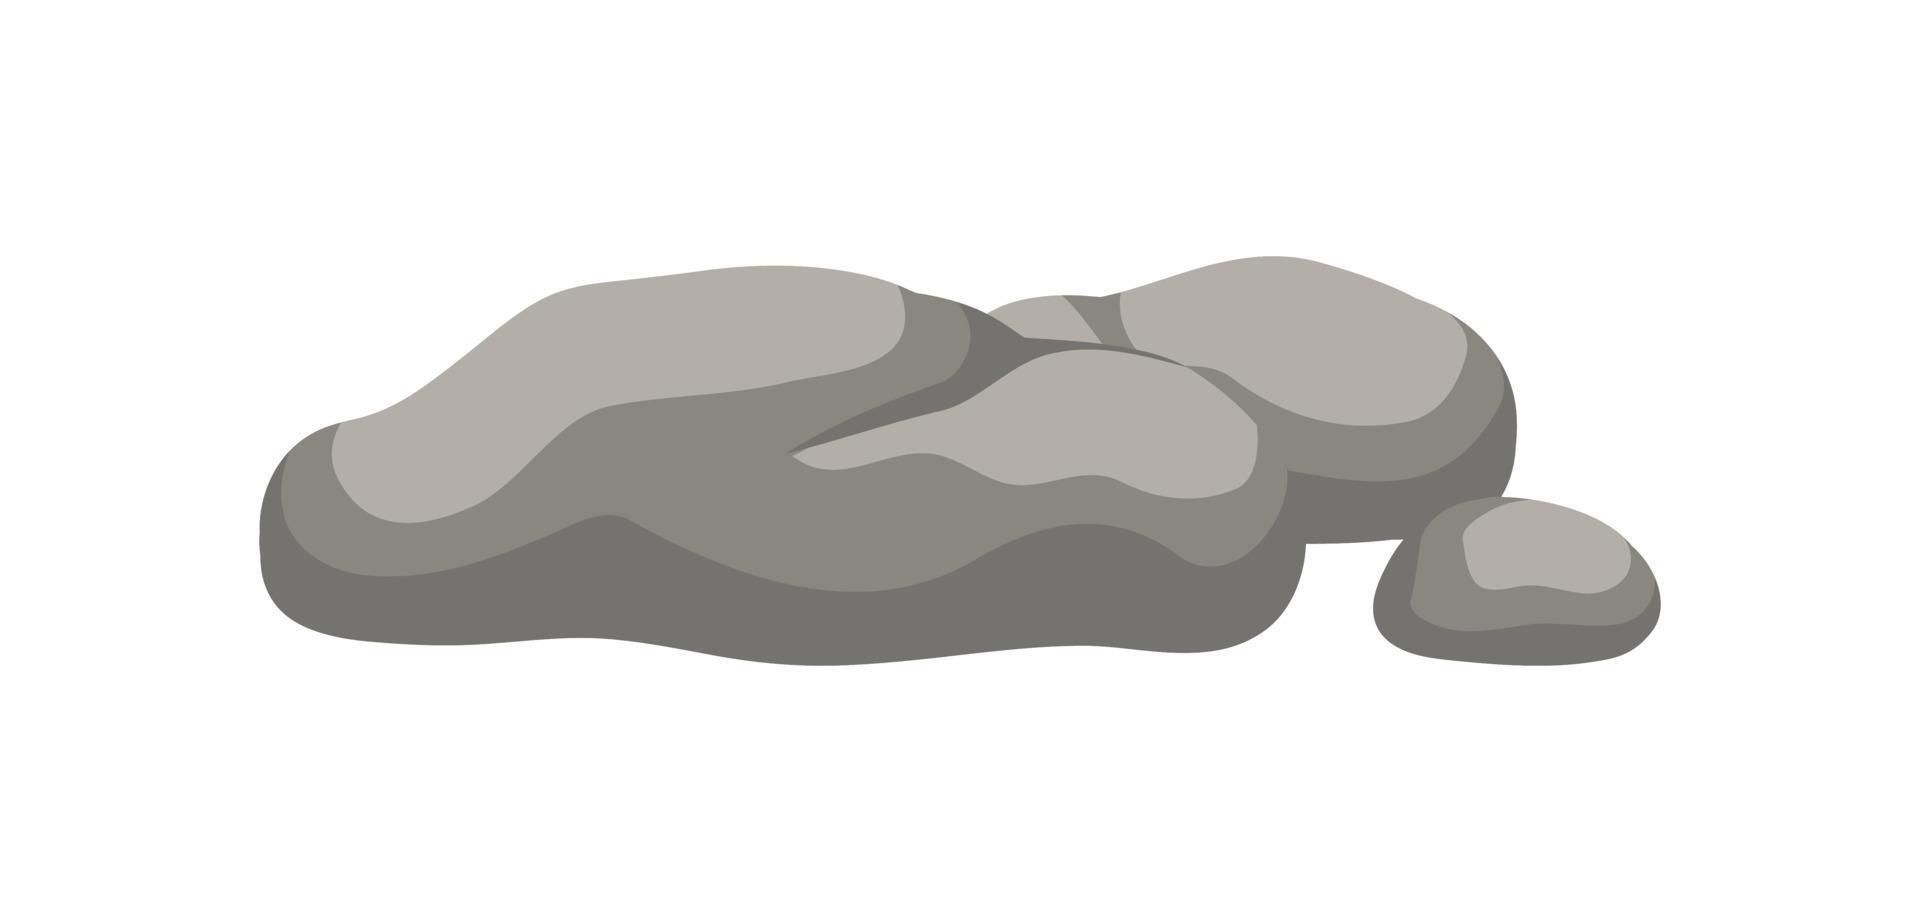 rock Roca roca formación dibujos animados vector ilustración.